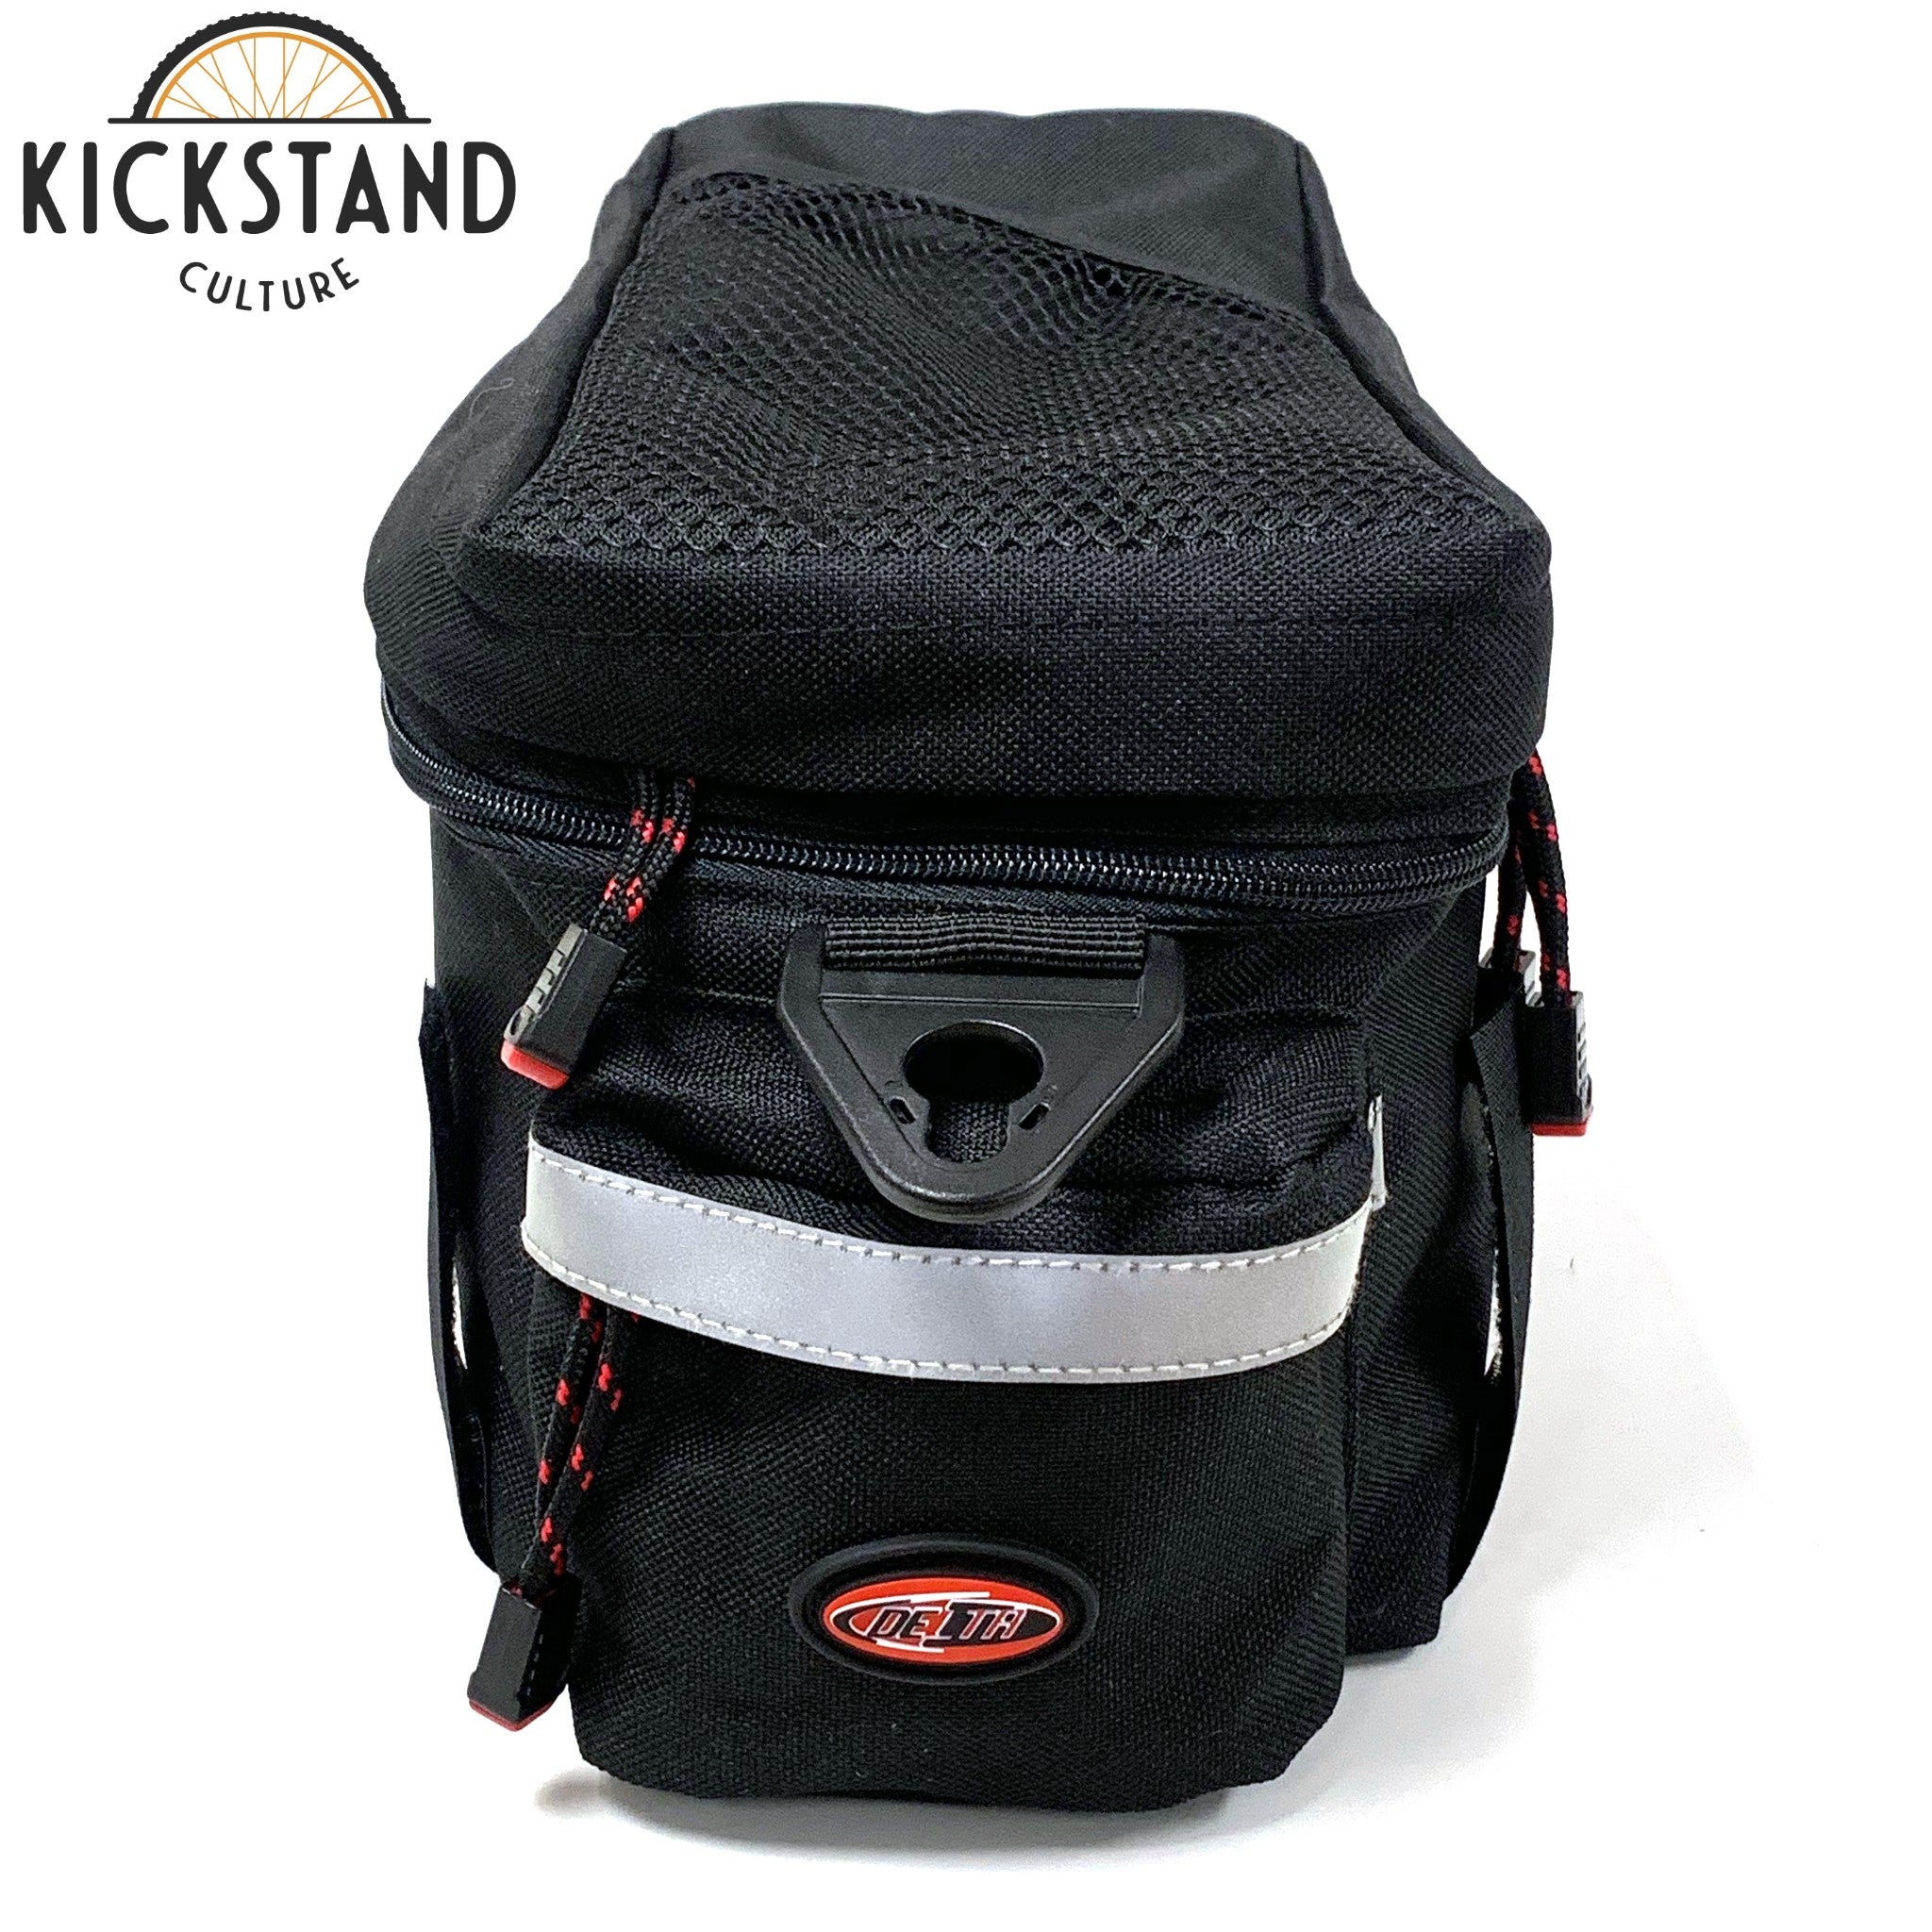 Delta Cycle Top Trunk Bag – Kickstand Culture